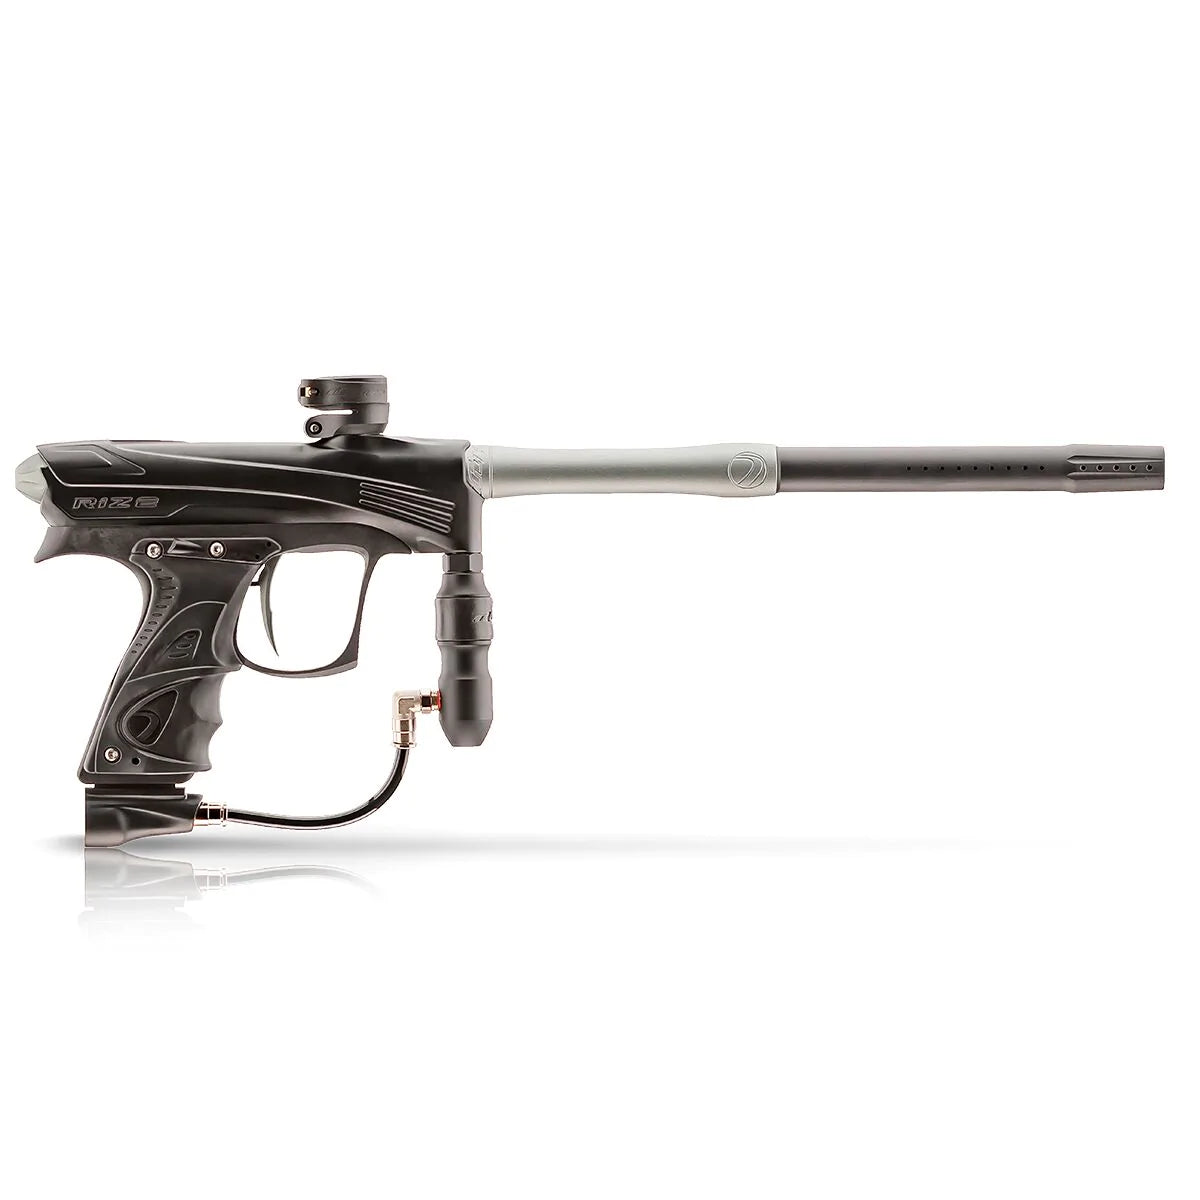 Dye Rize CZR Paintball Gun - Black / Gray